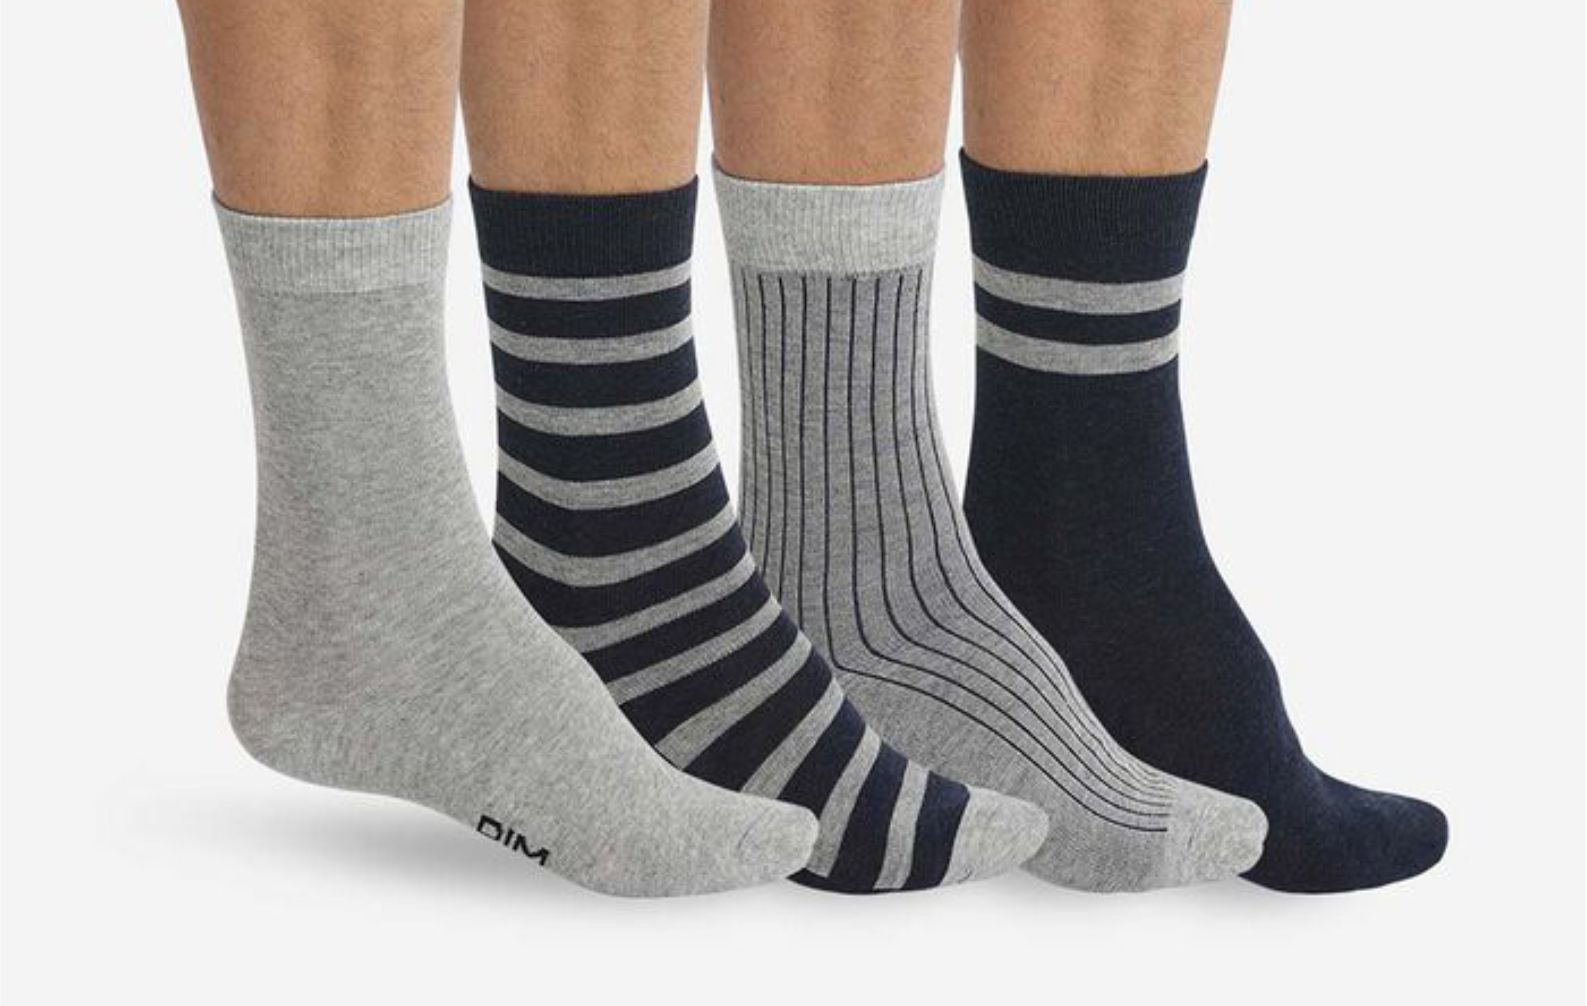 8 Popular Types Of Socks For Both Women And Men